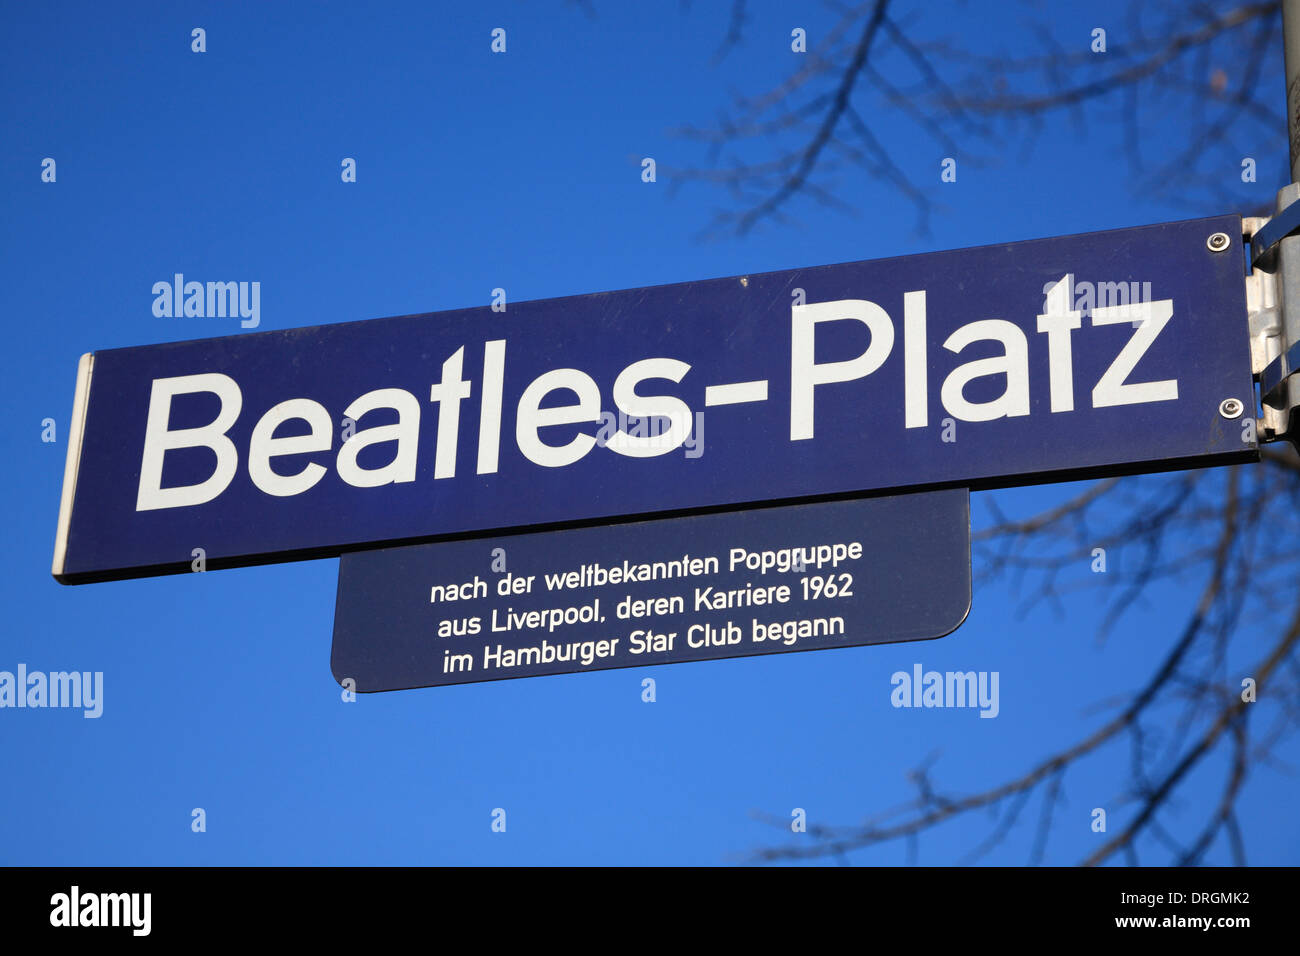 Beatles Platz à Reeperbahn, St Pauli, Hambourg, Allemagne, Europe Banque D'Images